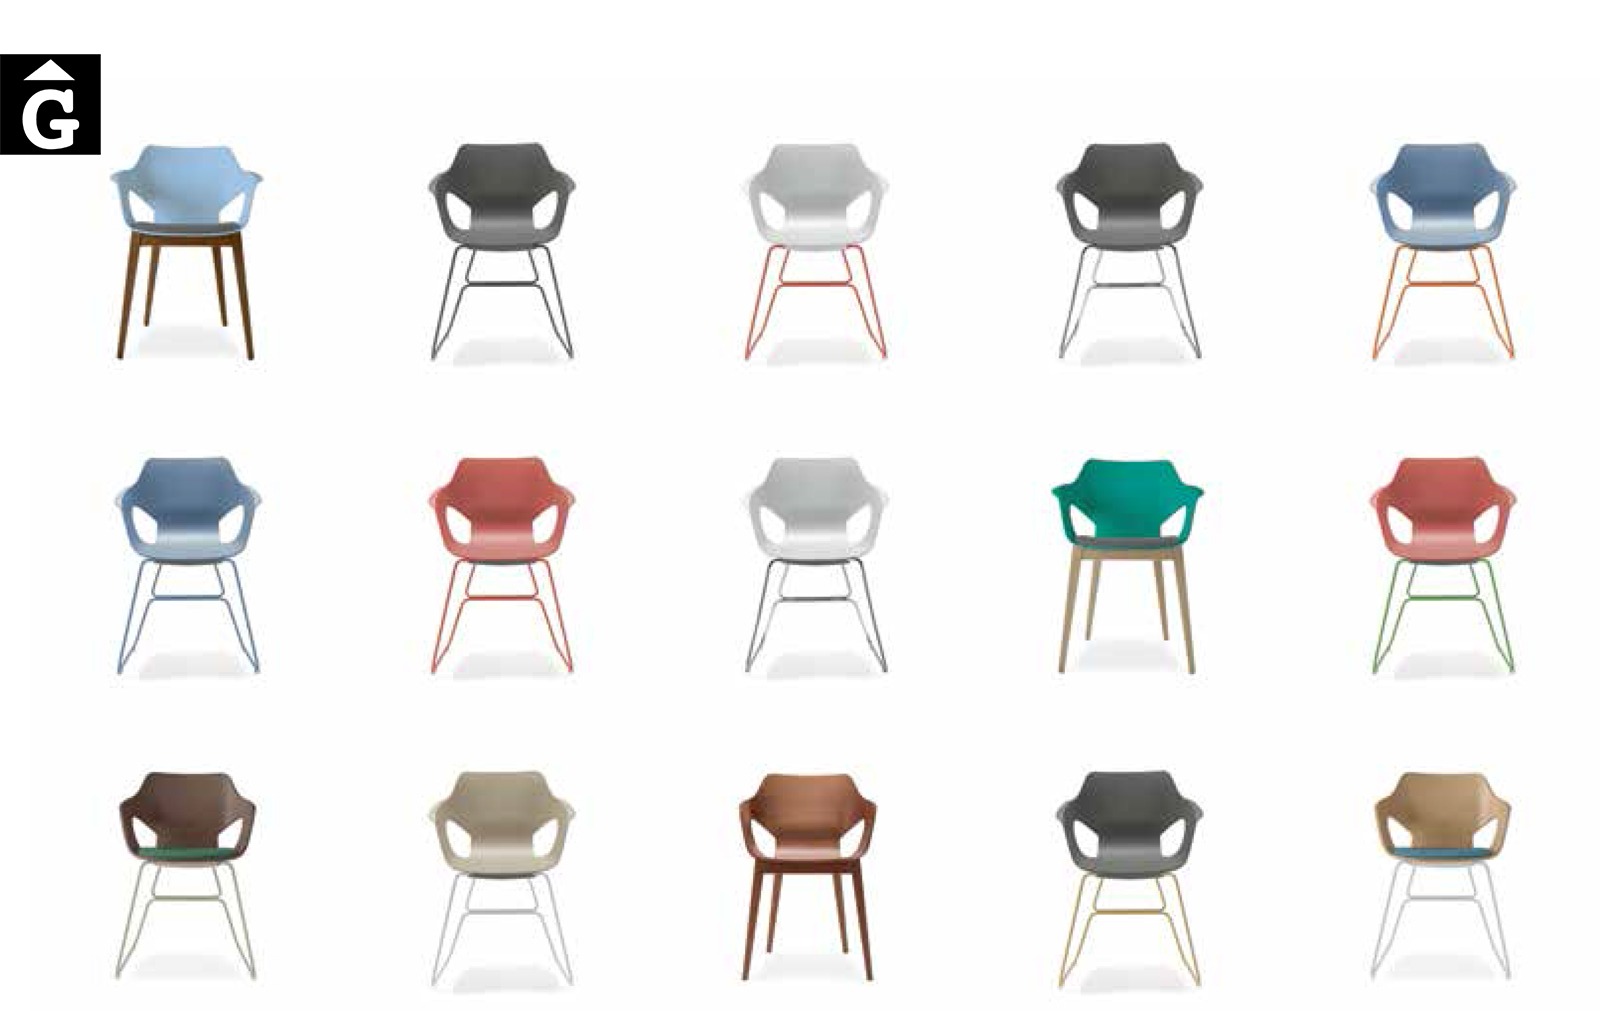 44 4 0 Loyra muebles by mobles Gifreu Idees per la llar moble de qualitat